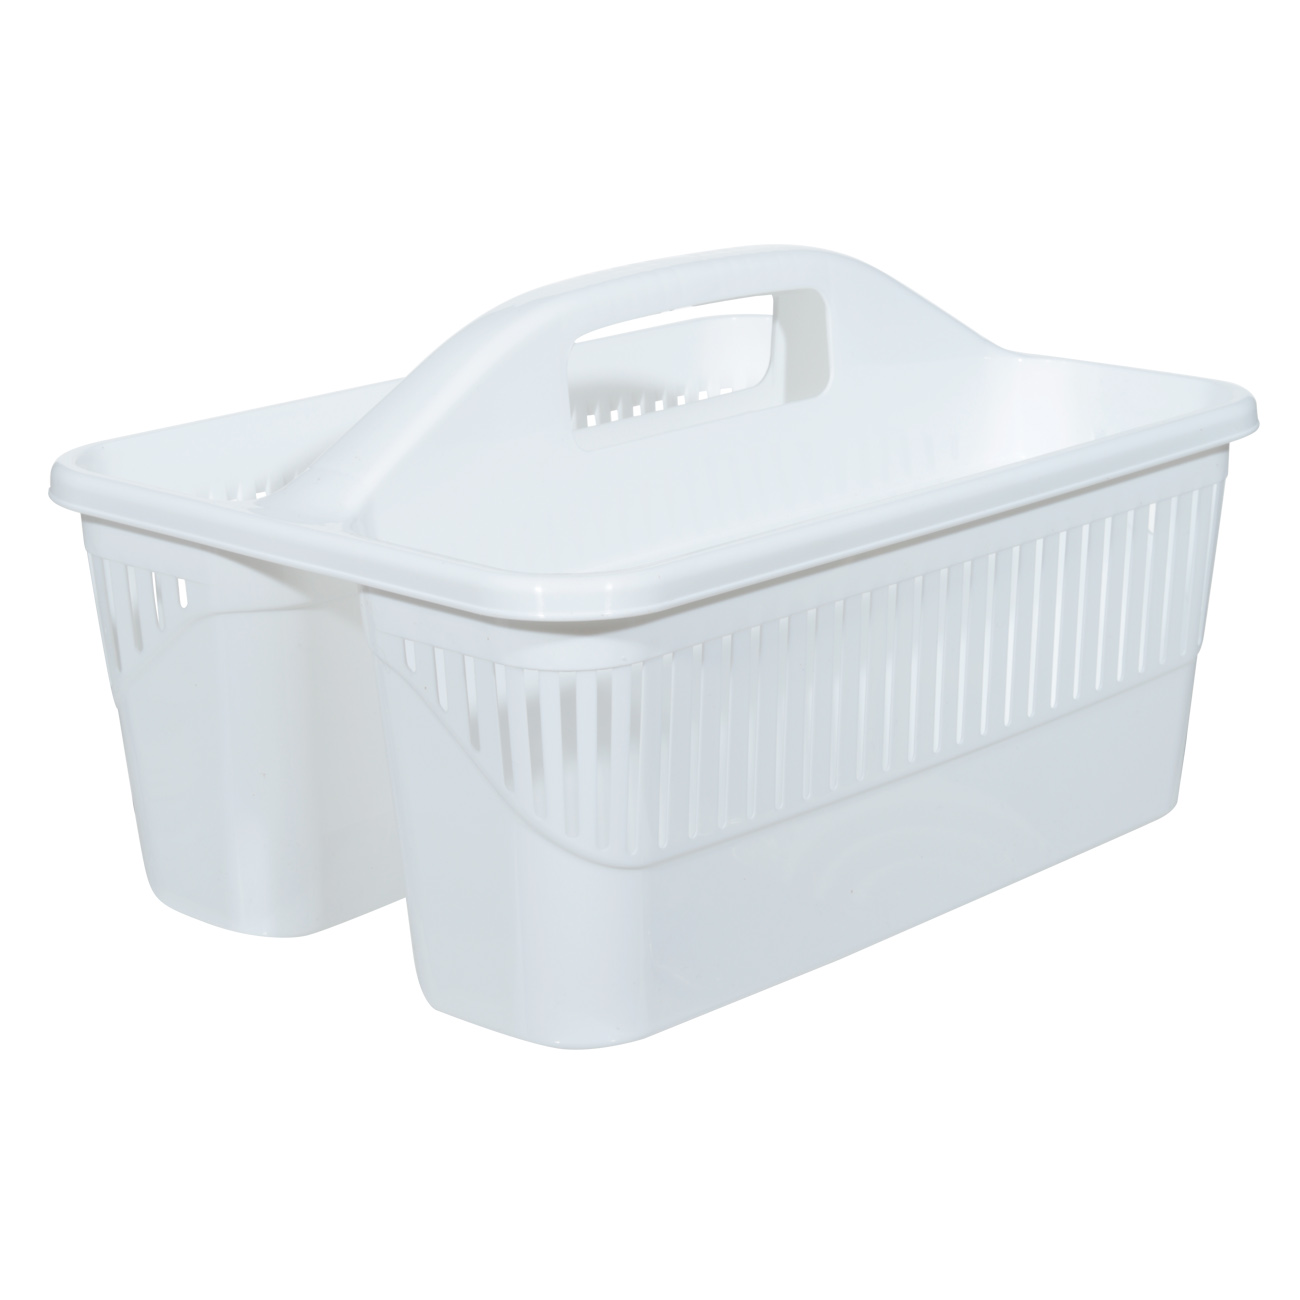 Органайзер для моющих средств, 23х30 см, переносной, пластик, белый, Compact изображение № 2